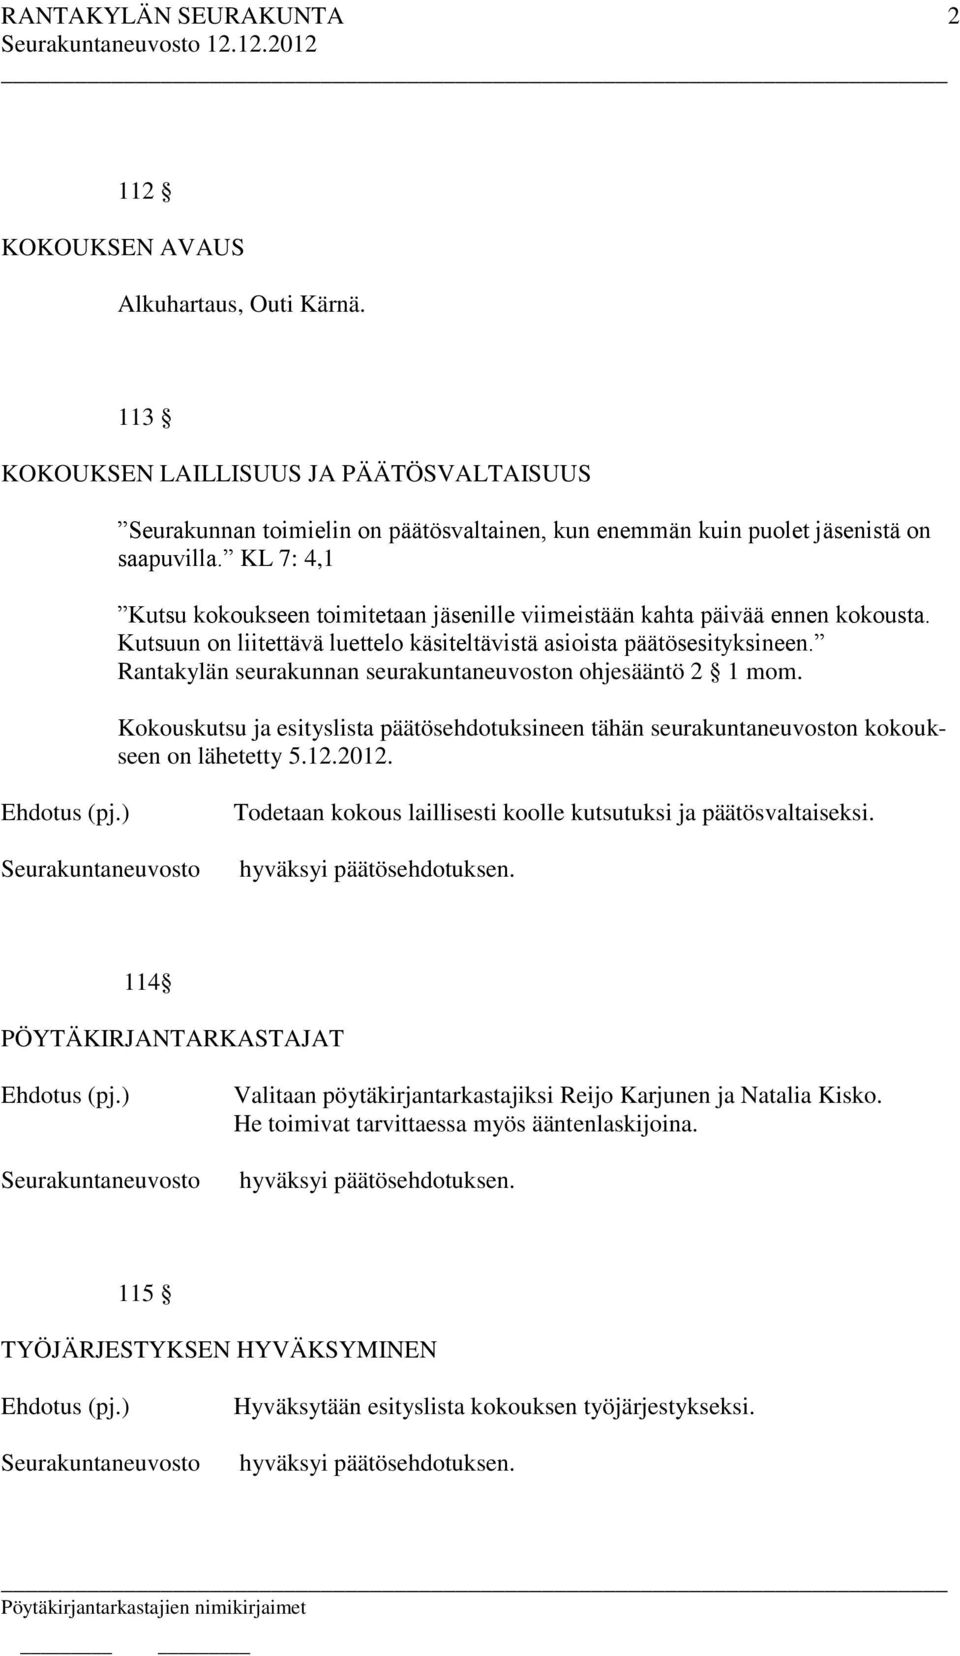 Rantakylän seurakunnan seurakuntaneuvoston ohjesääntö 2 1 mom. Kokouskutsu ja esityslista päätösehdotuksineen tähän seurakuntaneuvoston kokoukseen on lähetetty 5.12.2012.